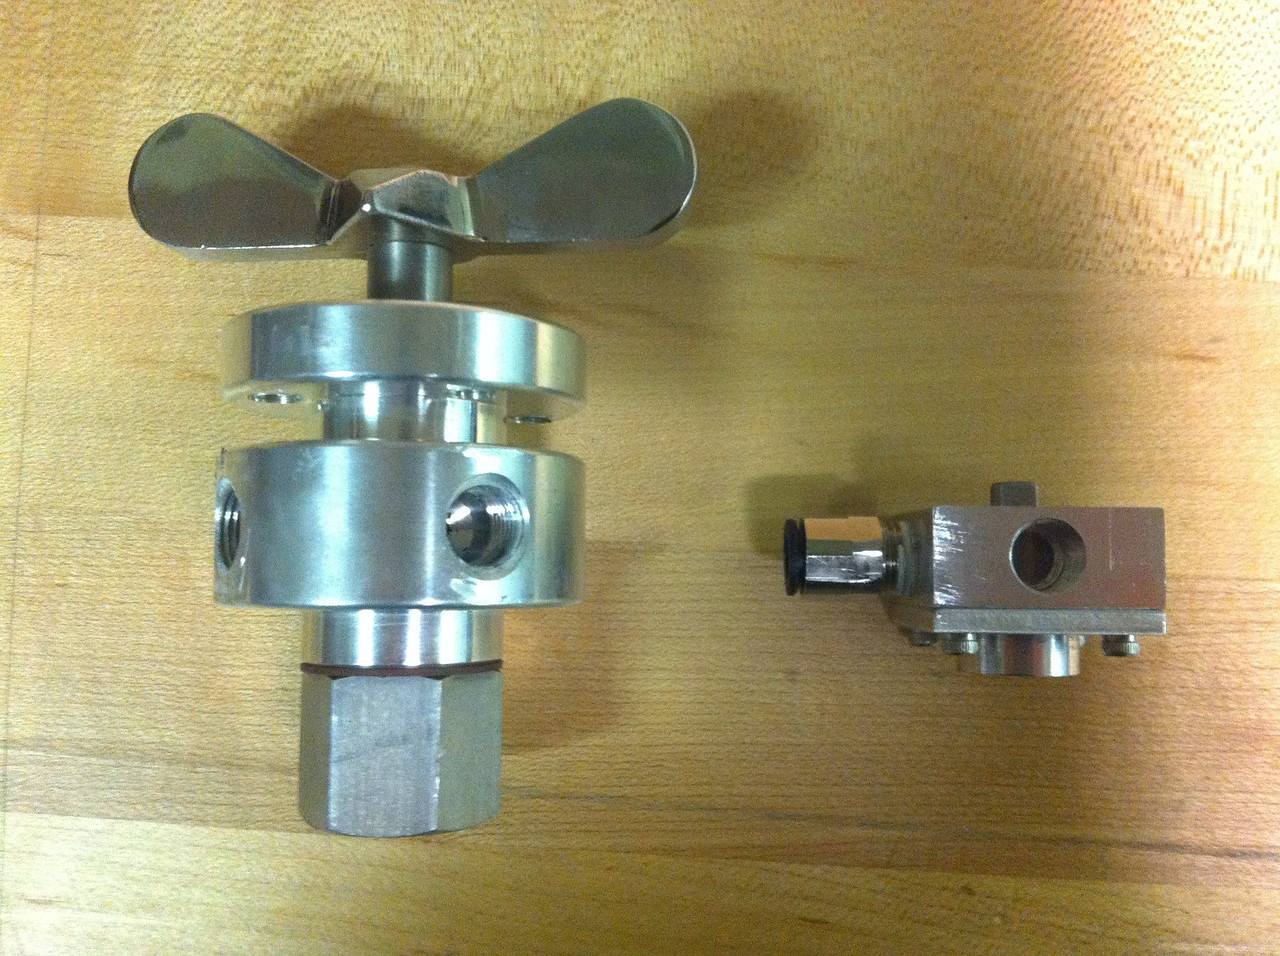 Spideybot valve redesign size comarison.jpg